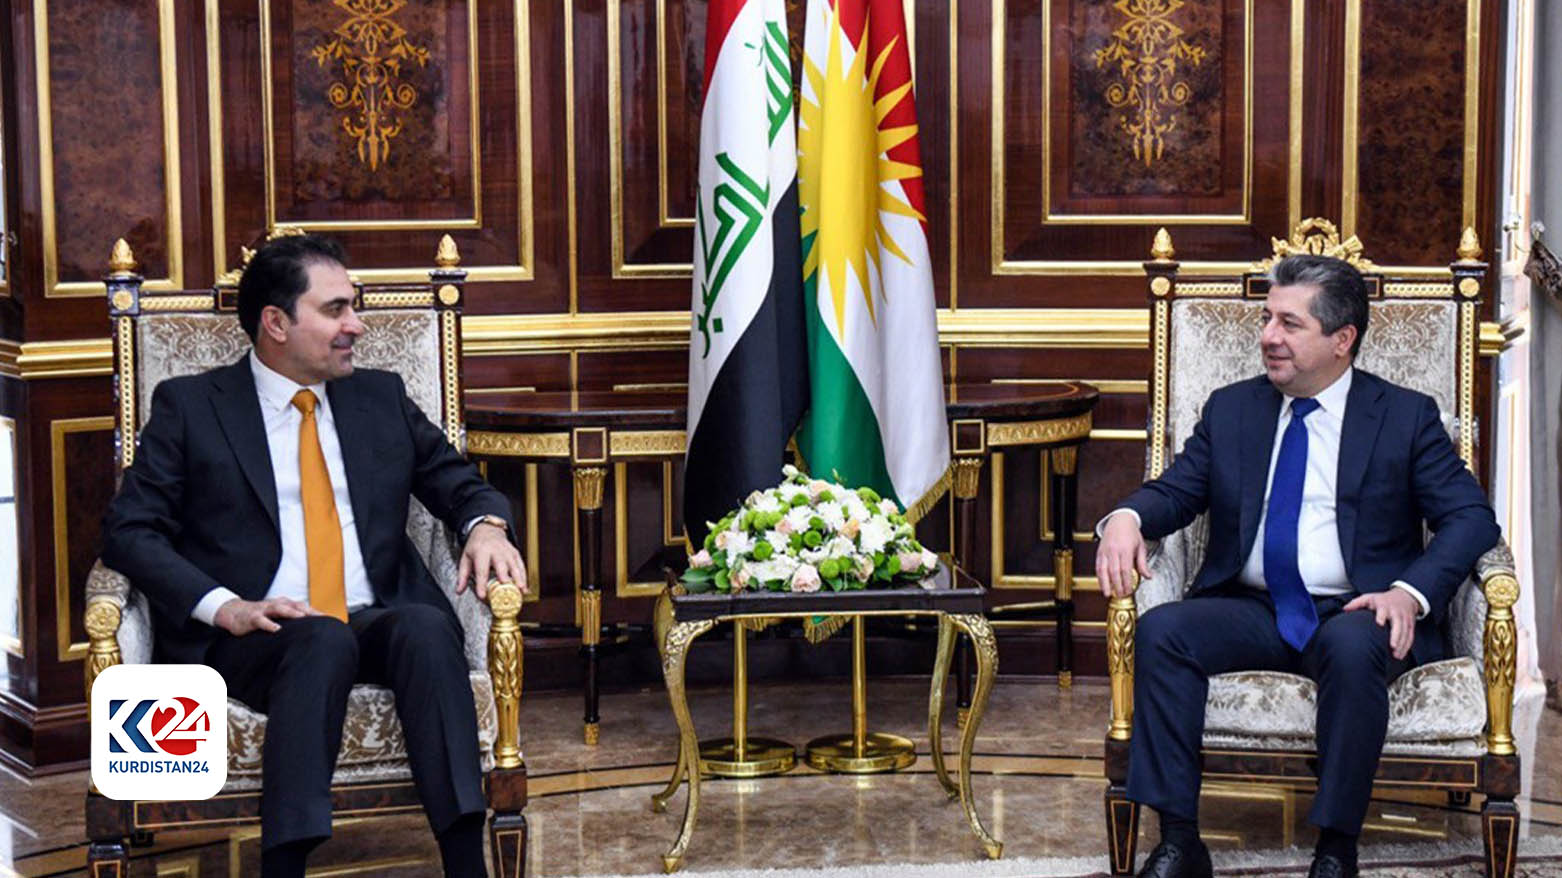 PM Barzani Iraqi parliament Acting Speaker discuss latest developments in Iraq